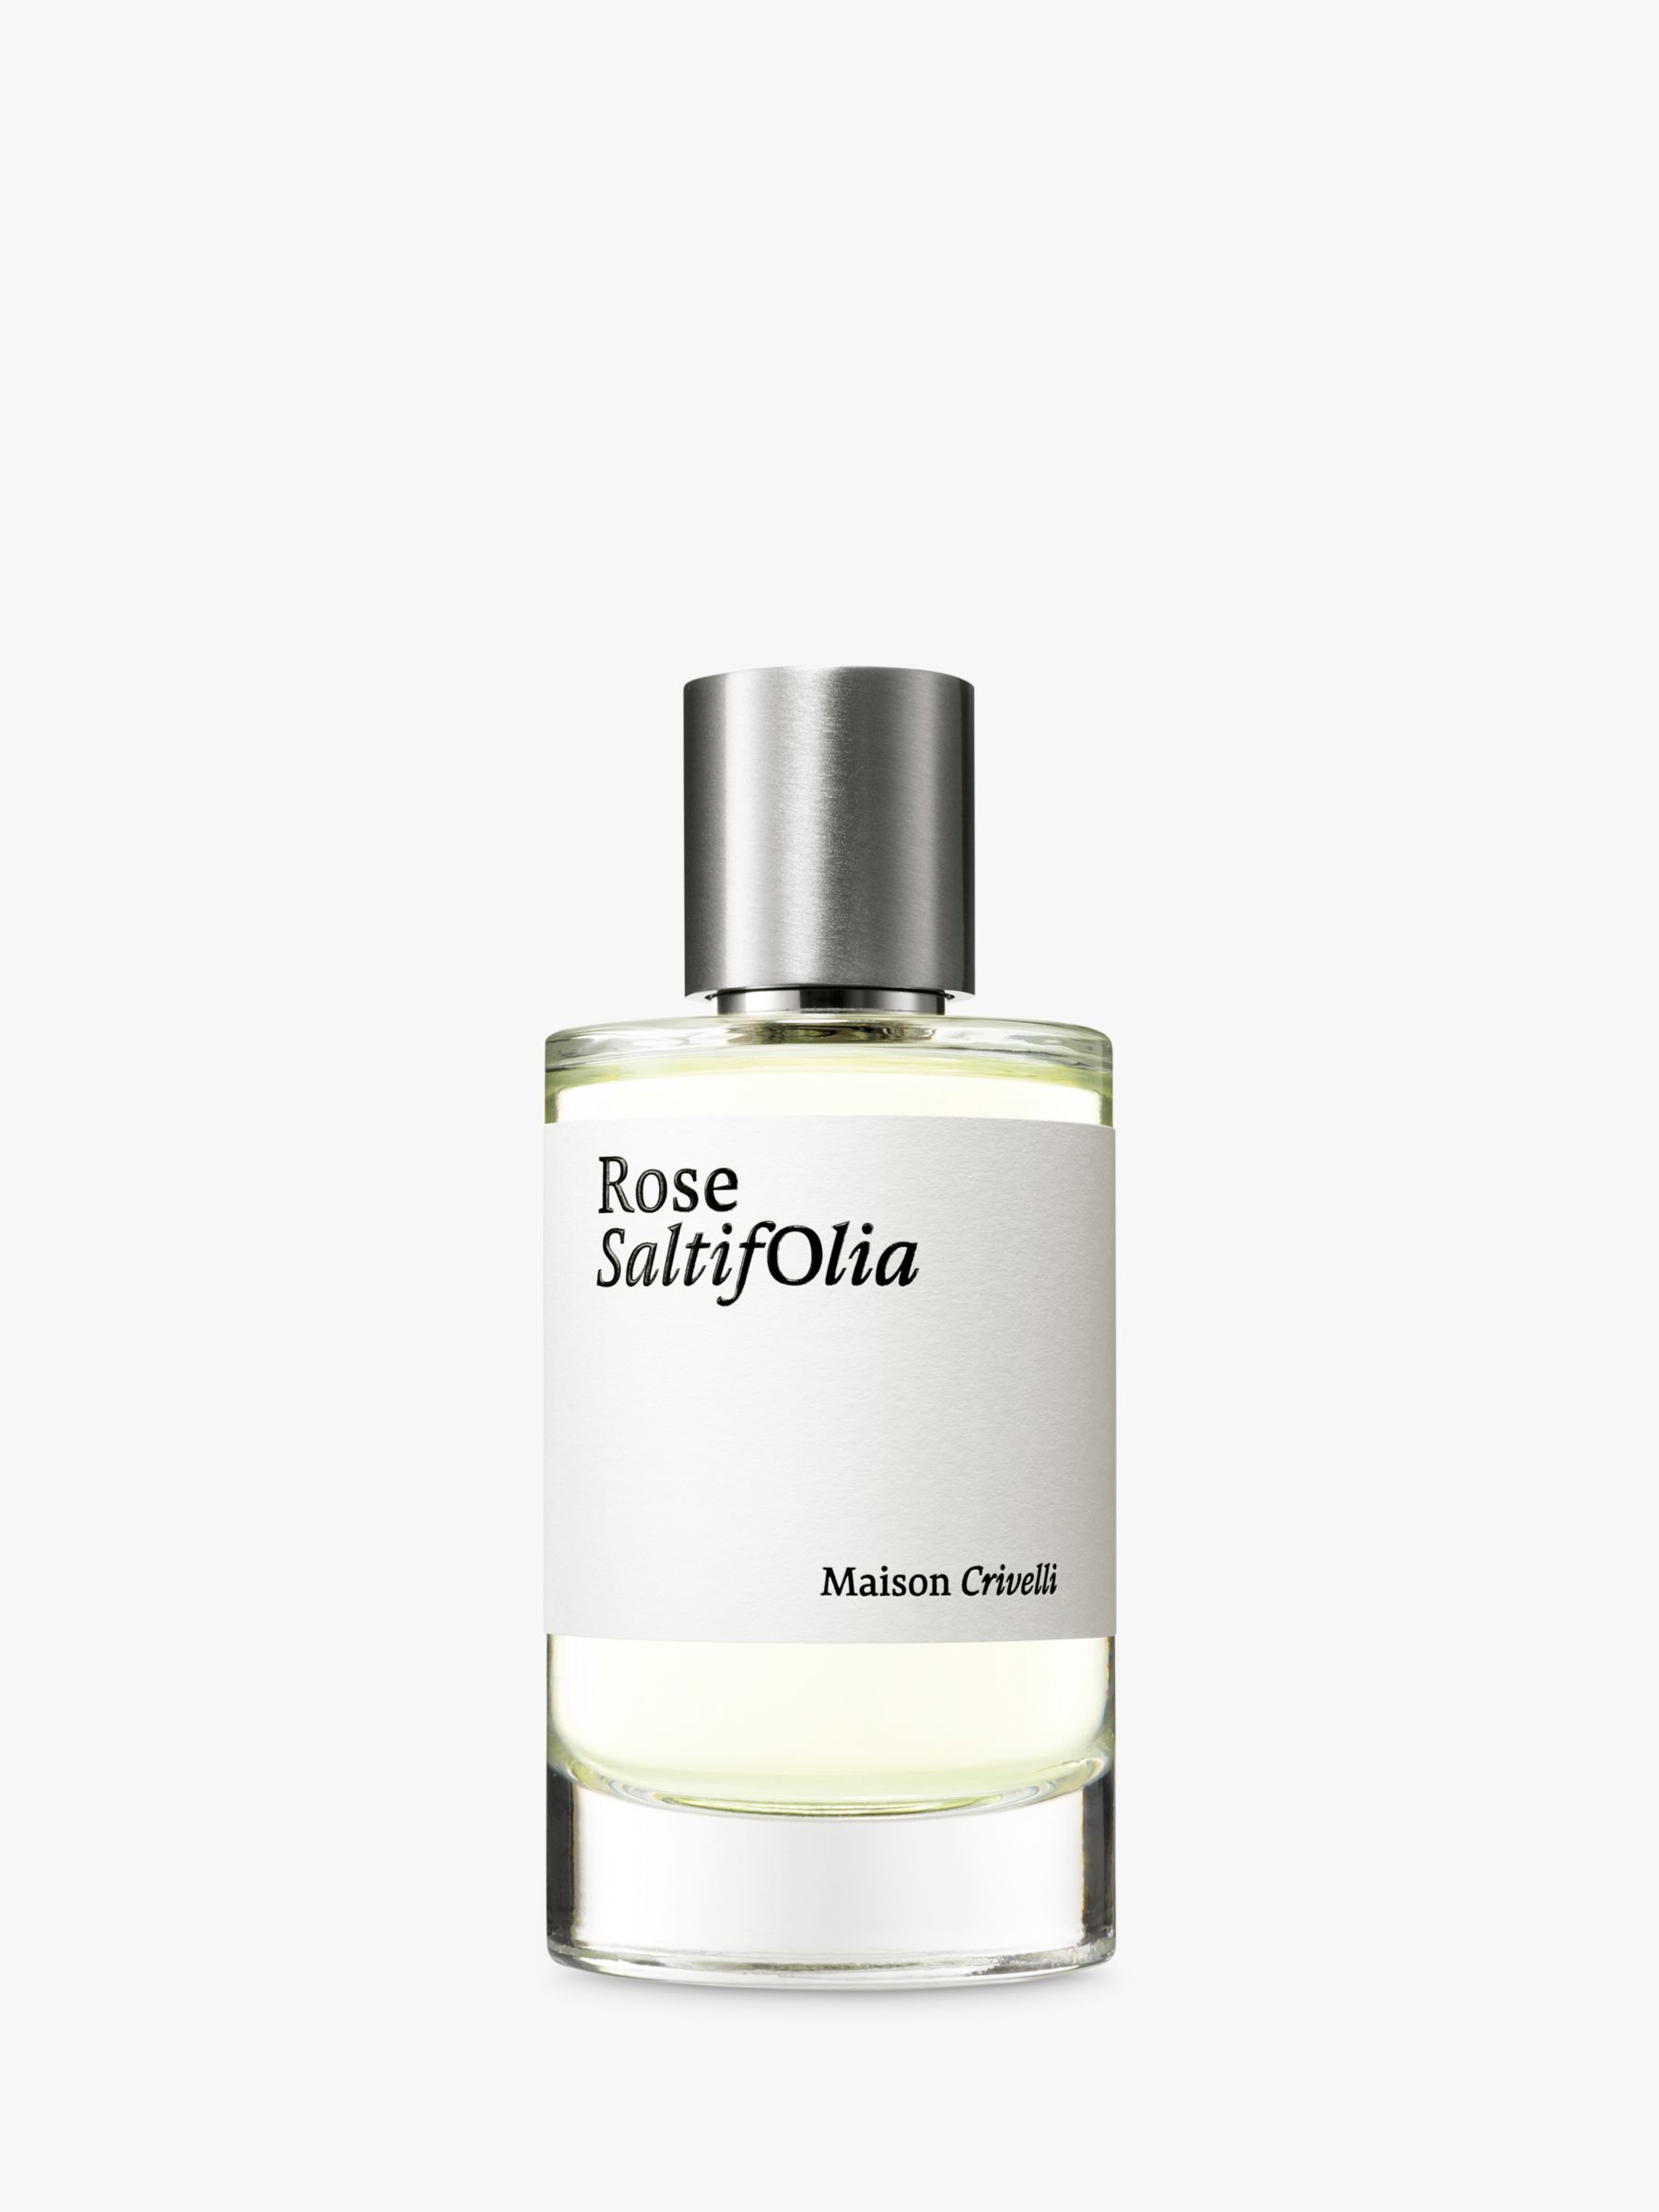 Maison Crivelli Rose SaltifOlia Eau de Parfum, 100ml at John Lewis &  Partners